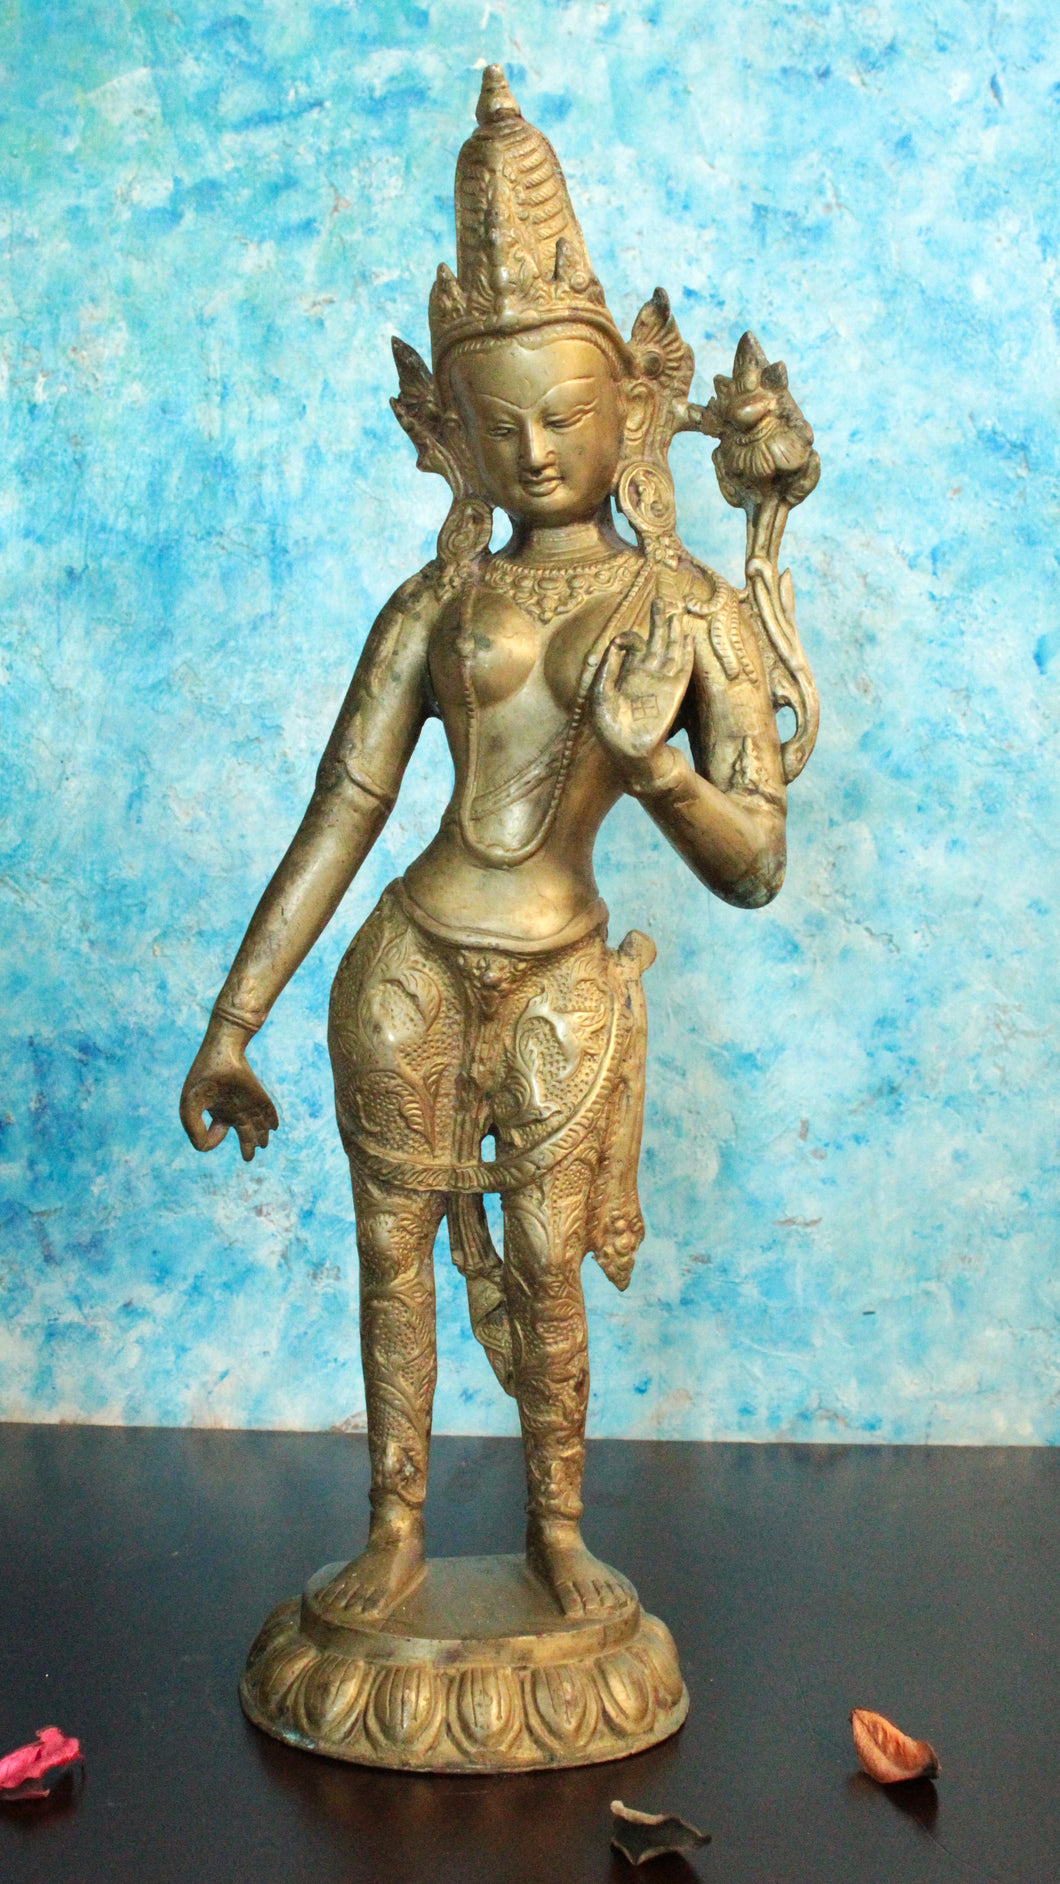 Exquisite Brass Vintage Goddess Tara Statue: A Timeless Work of Art